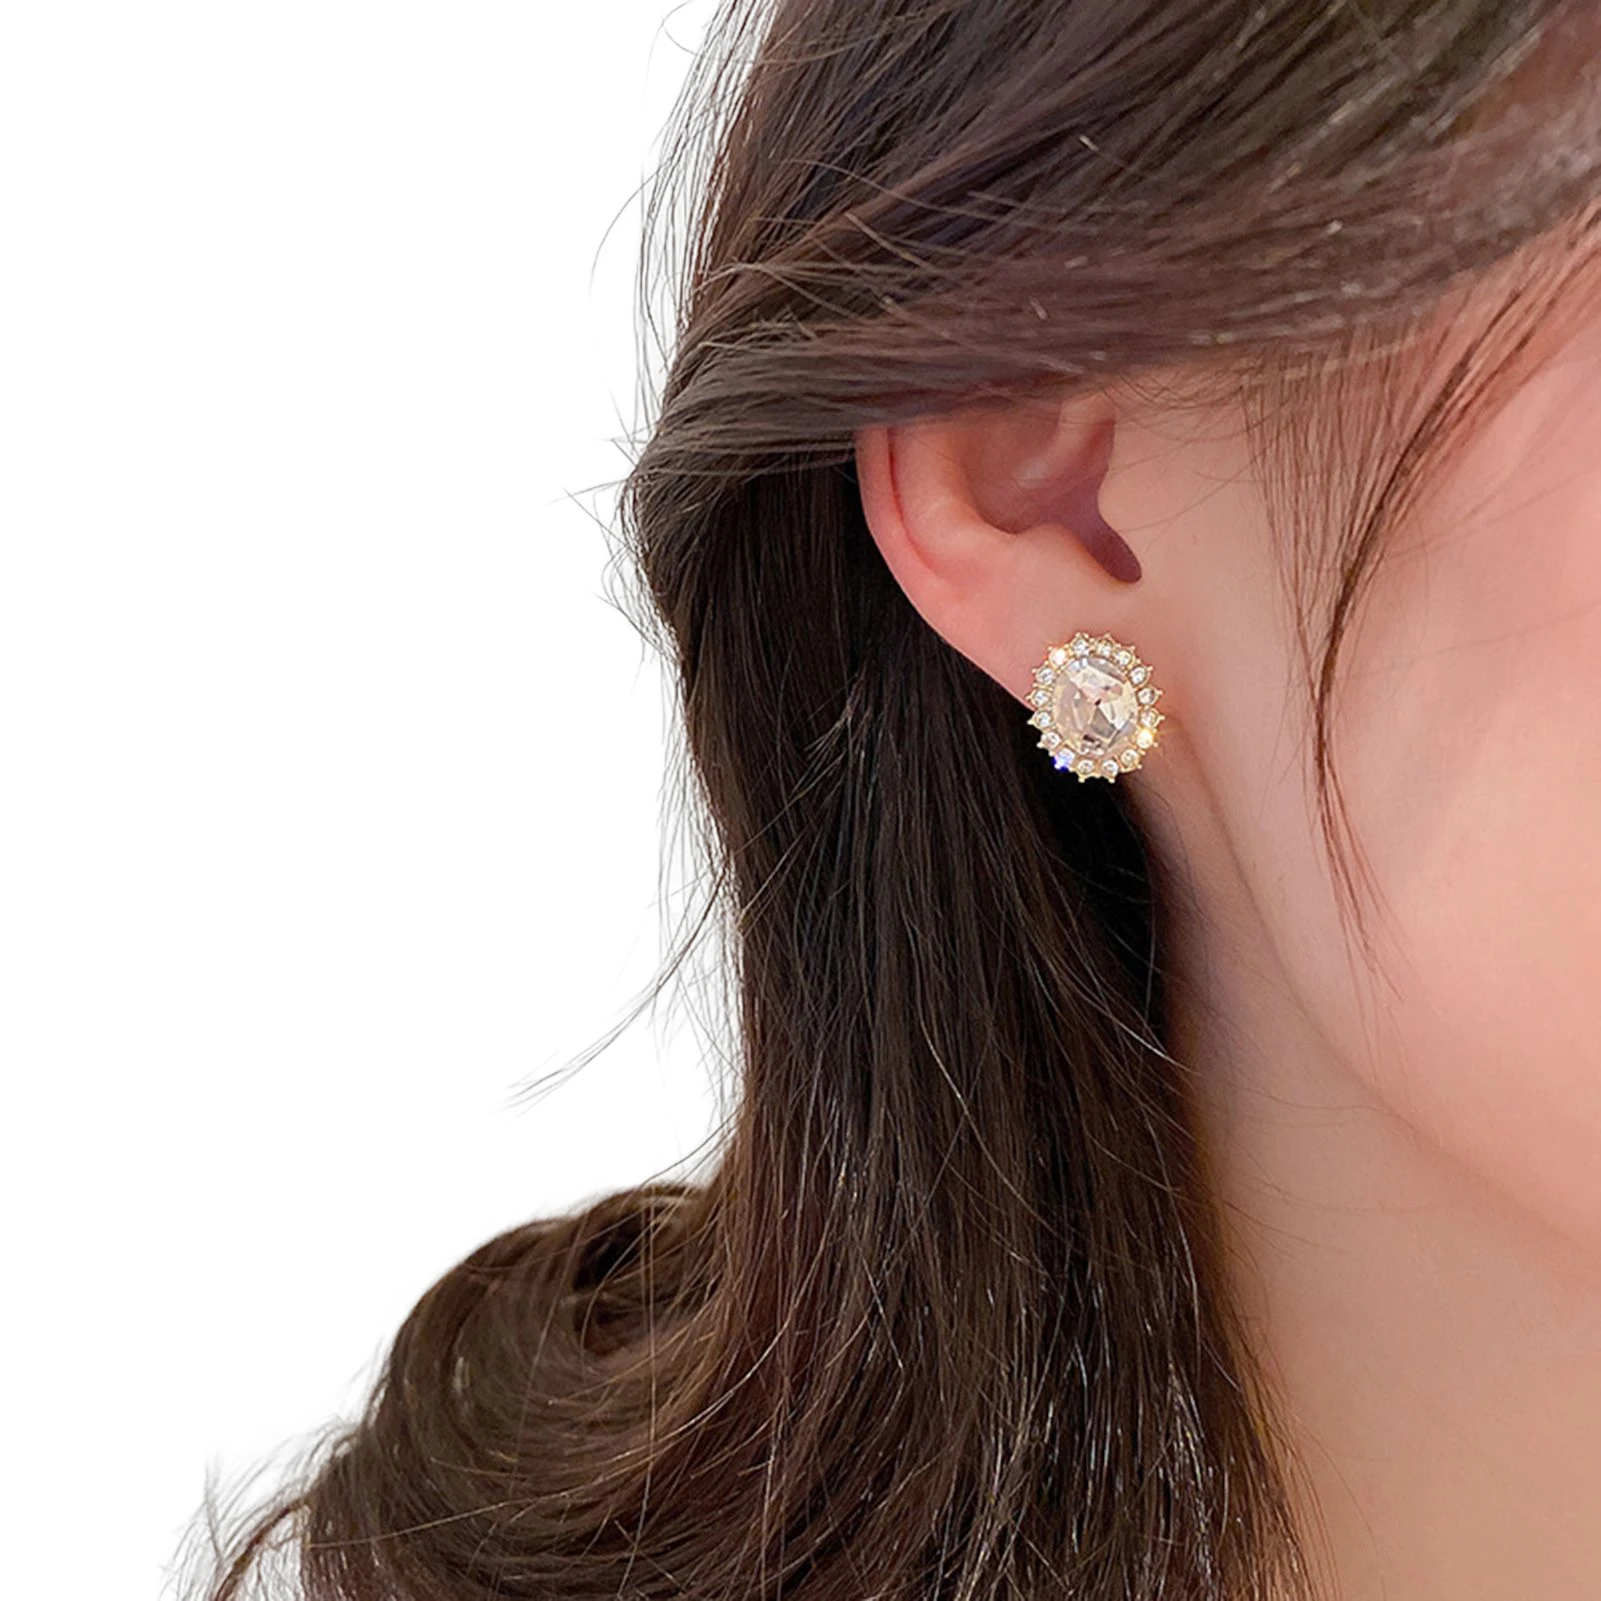 

Women's Crystal Stud Earrings Round Clear Cubic Zirconia Hypoallergenic Earrings Women Fashion Jewelry Gifts